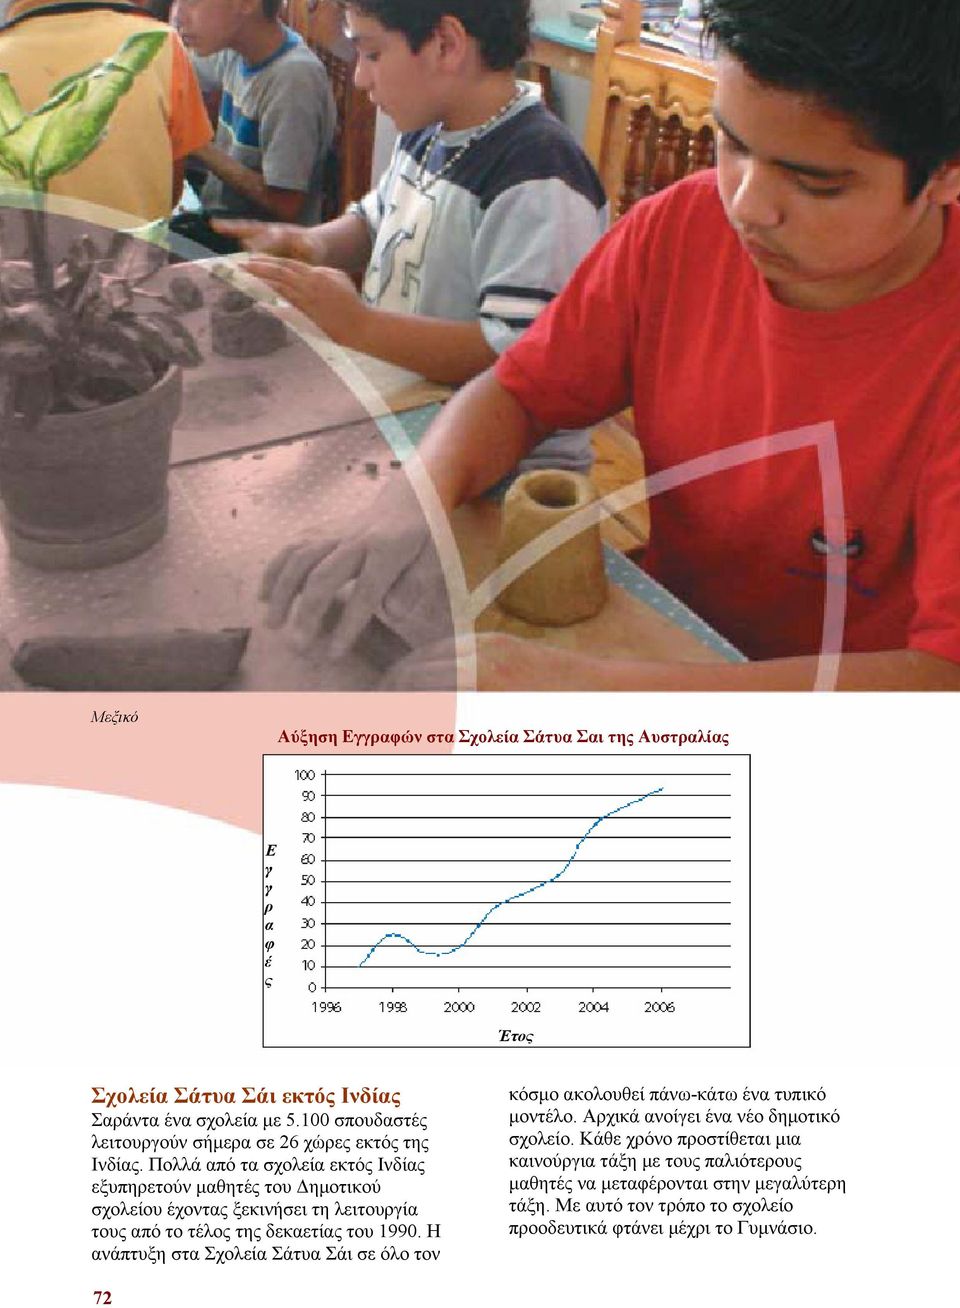 Πολλά από τα σχολεία εκτός Ινδίας εξυπηρετούν μαθητές του Δημοτικού σχολείου έχοντας ξεκινήσει τη λειτουργία τους από το τέλος της δεκαετίας του 1990.